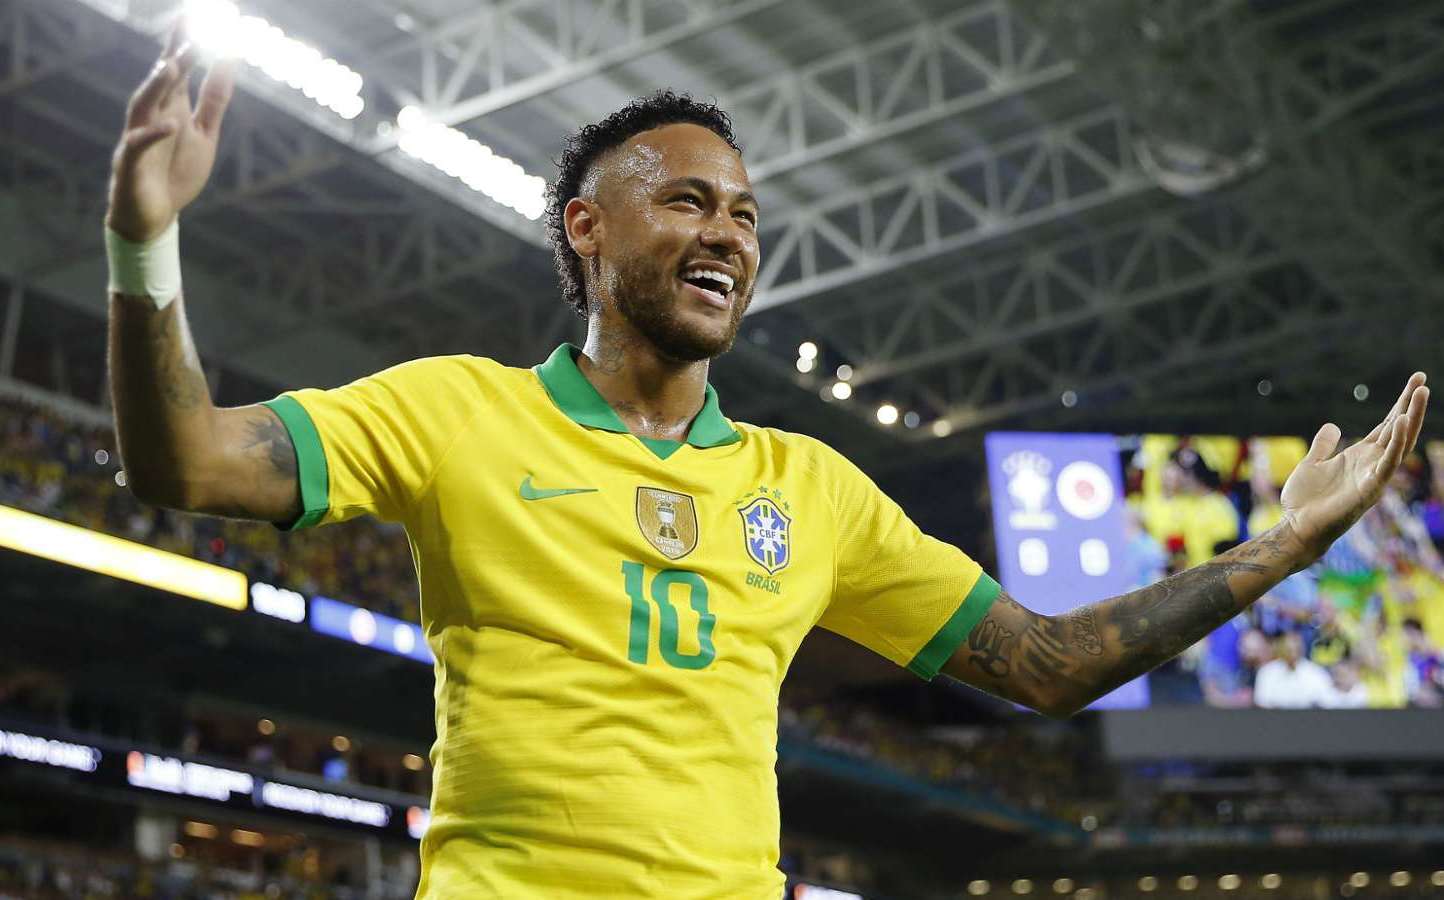 Ảnh Neymar Jr Đẹp, Ngầu, Chất Nhất Nhất Quả Đất Cho Fan